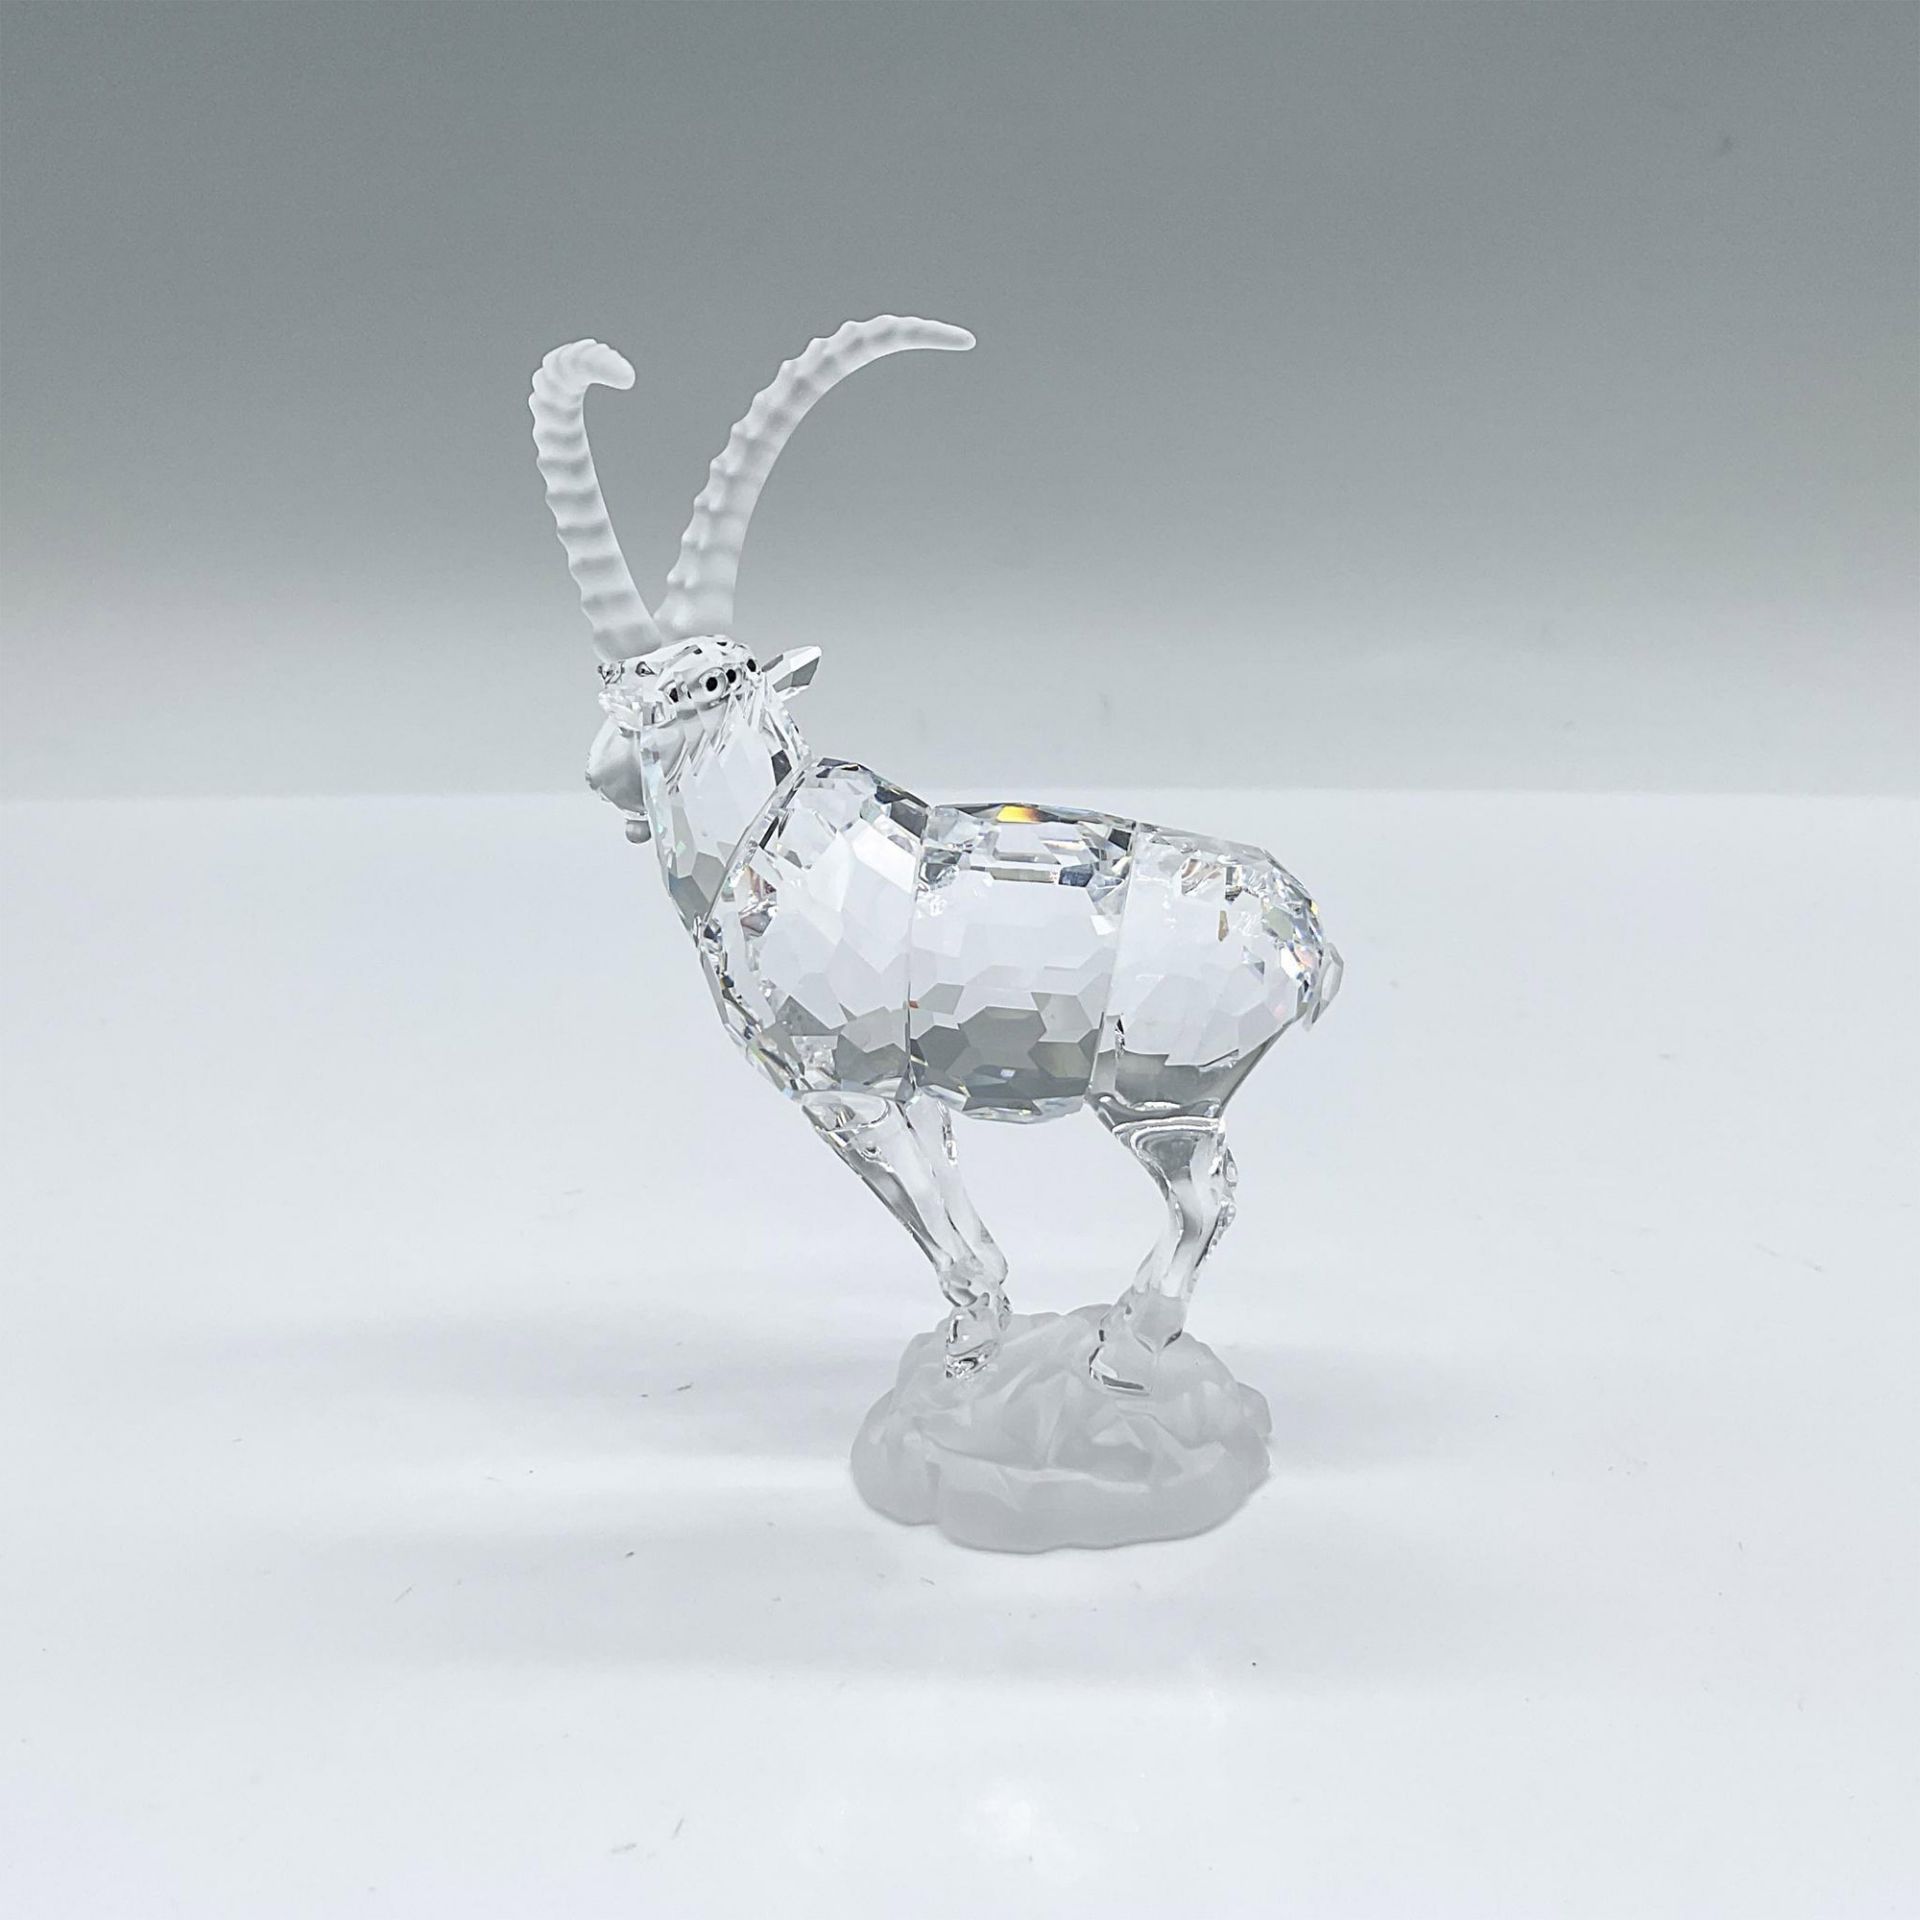 Swarovski Crystal Figurine, Ibex - Image 3 of 4